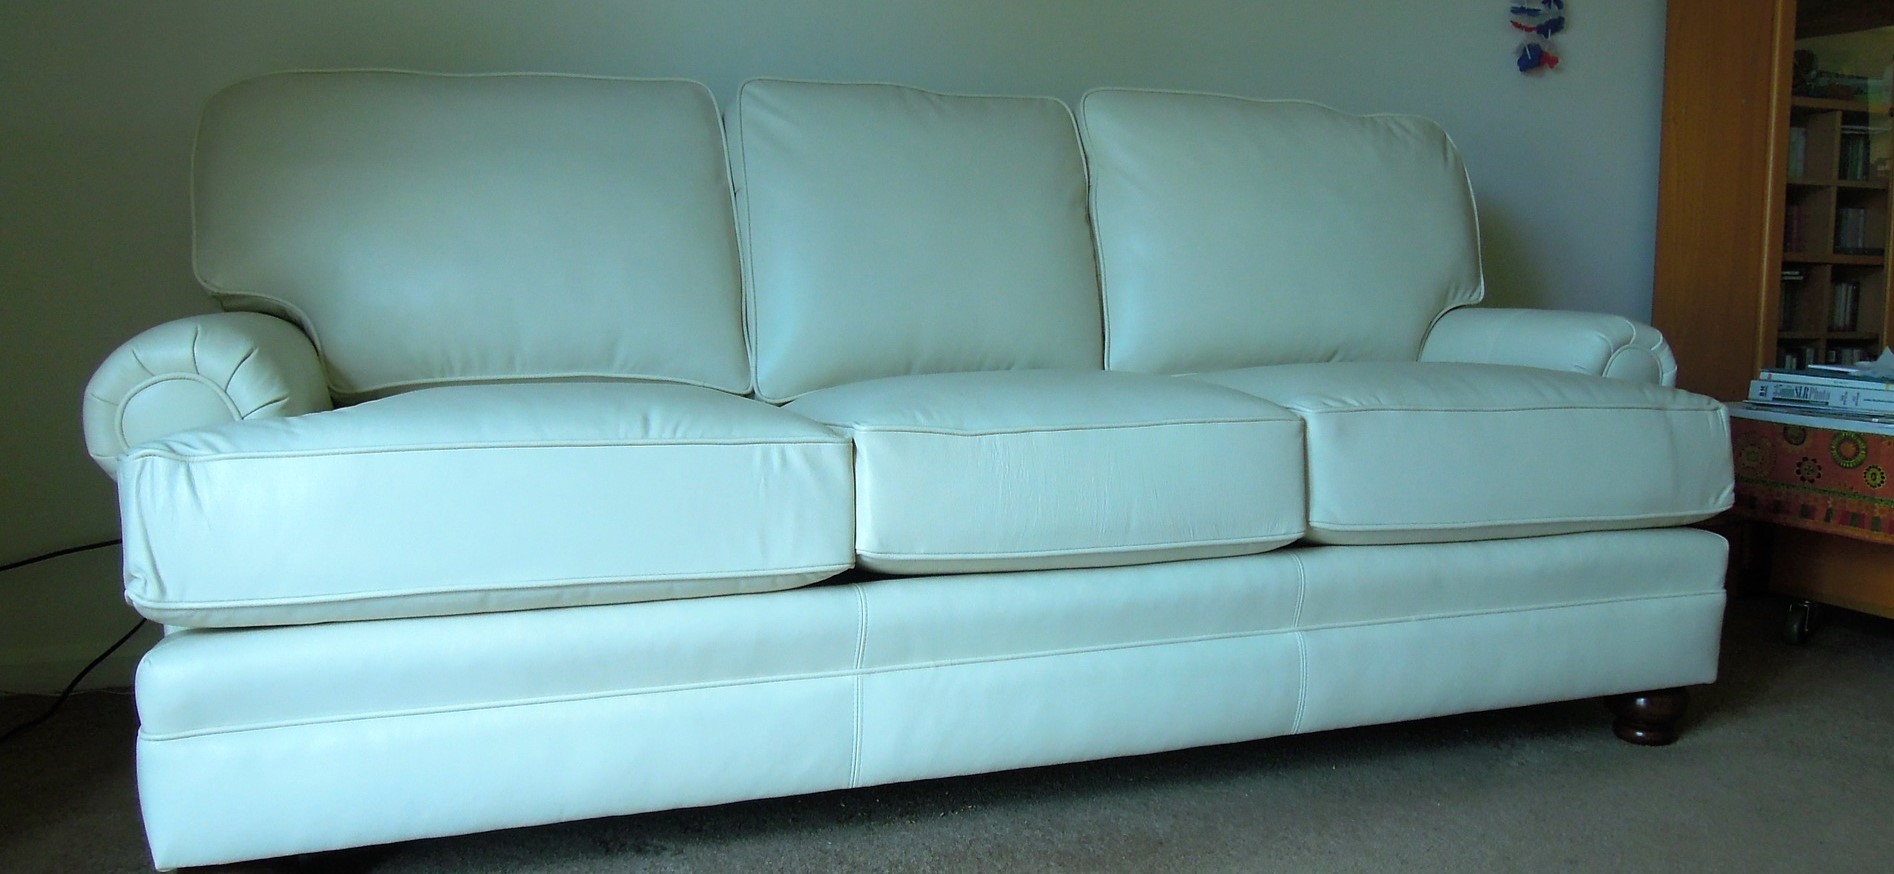 Пятна с белого дивана рекомендуется удалять сразу с помощью влажной губки